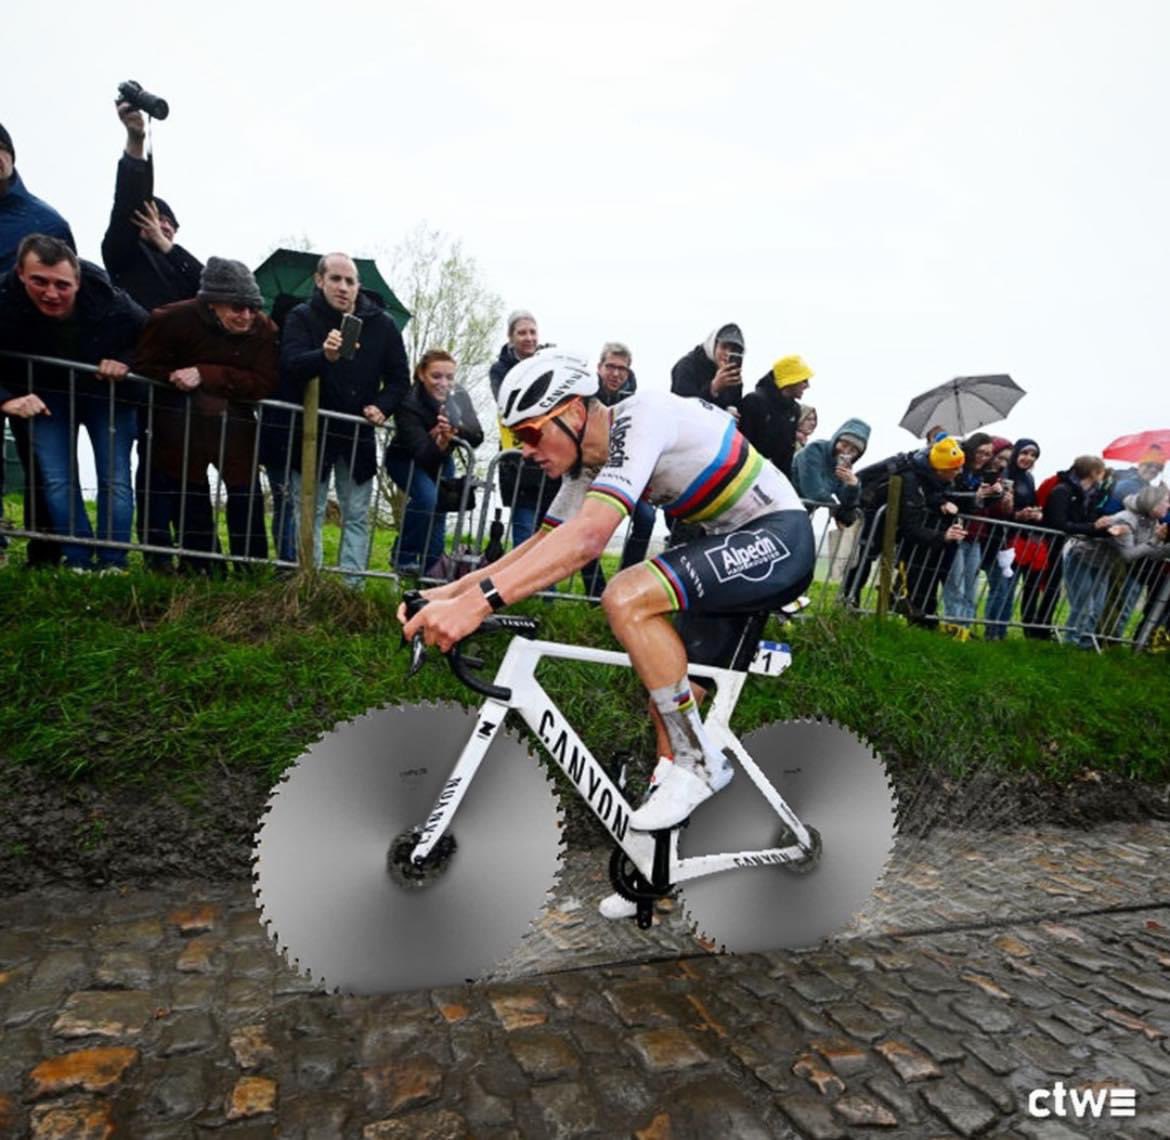 Les amis de Paris Roubaix vont avoir du boulot l’année prochaine après le passage de @mathieuvdpoel demain 🙃 📷: ctwcycling